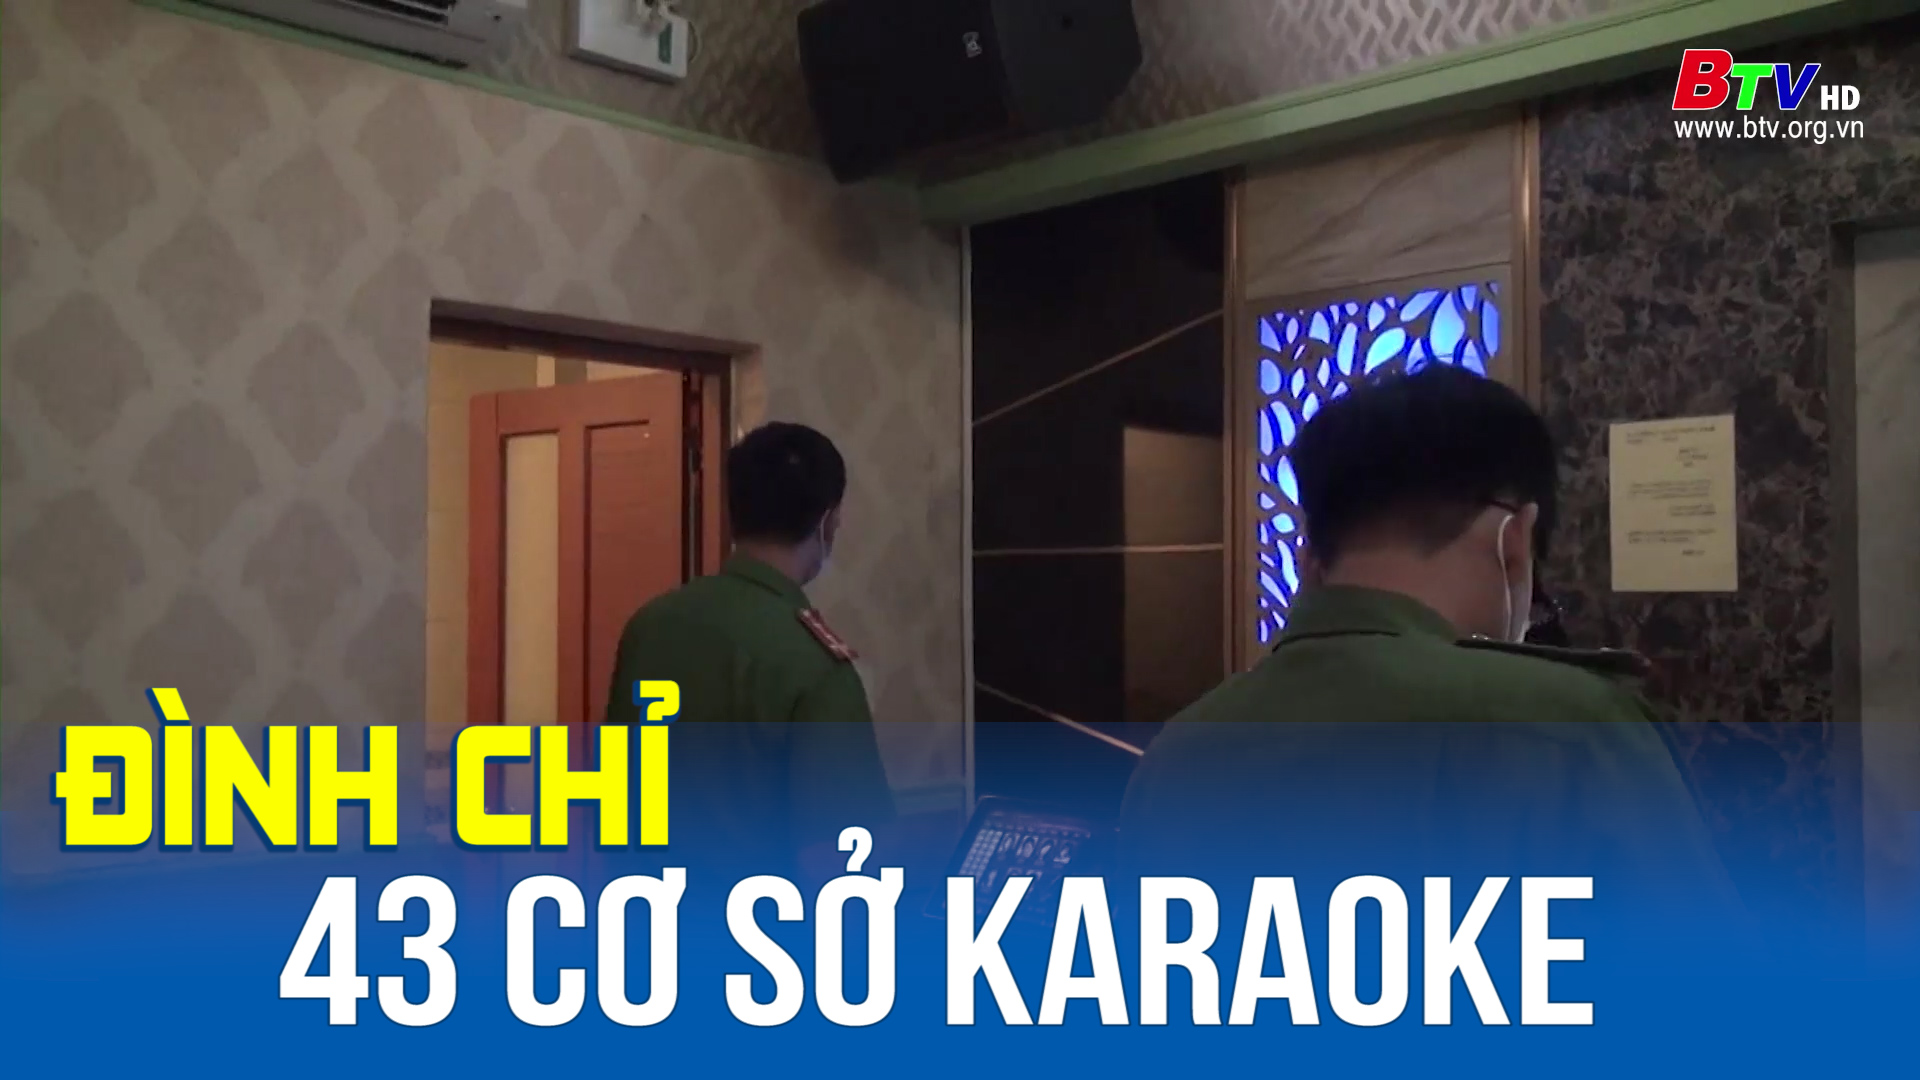 Bình Dương: tạm đình chỉ và đình chỉ 43 cơ sở karaoke